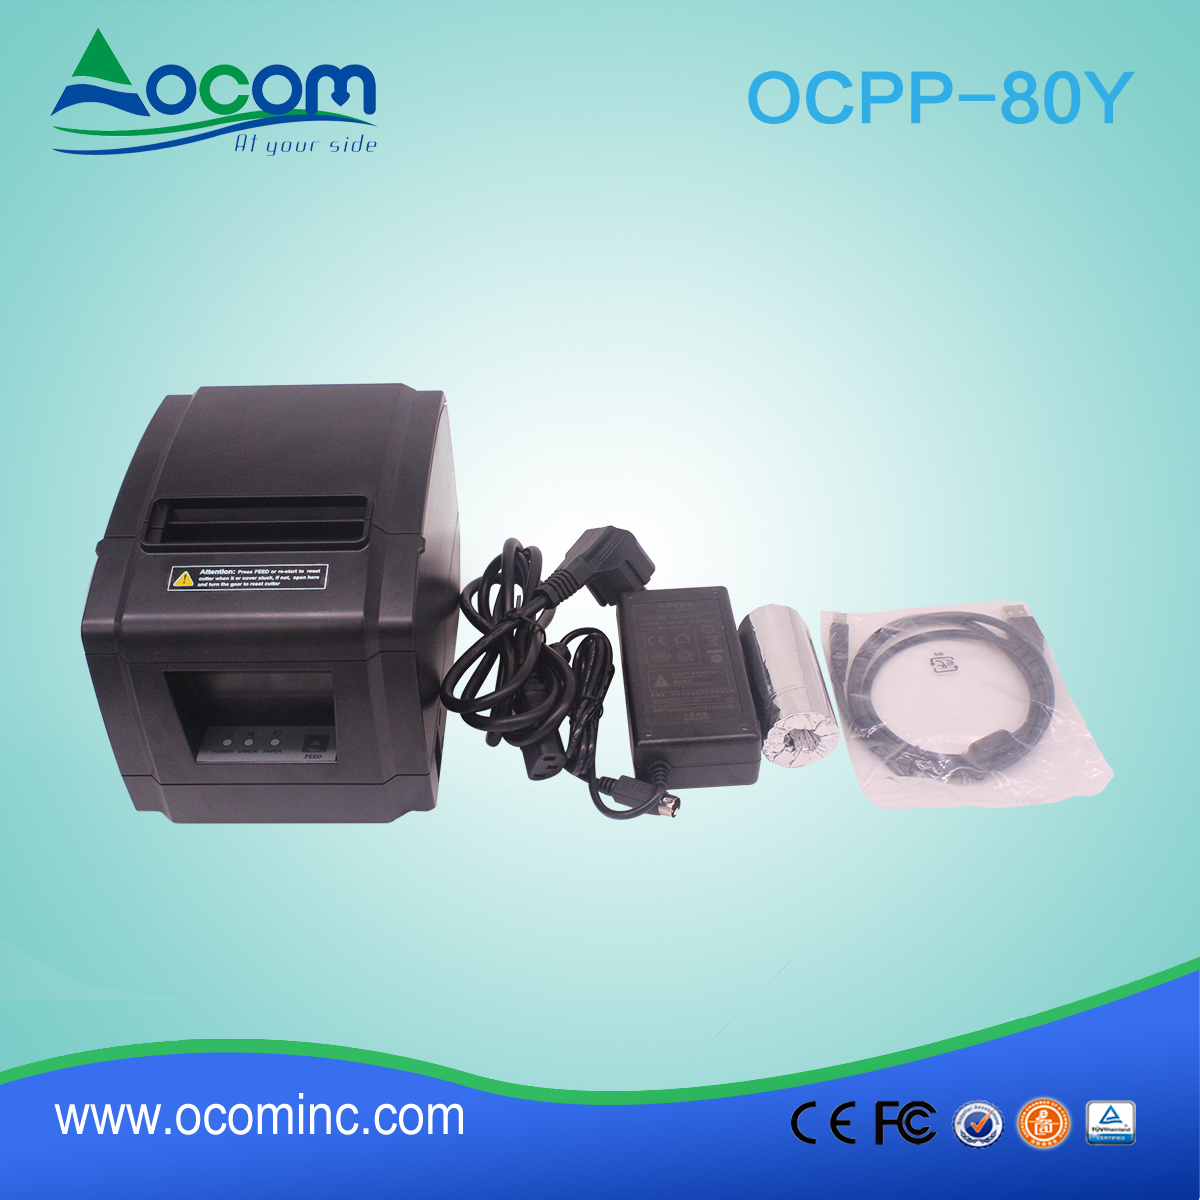 OCPP-80Y-China machte niedrigen verlorenen 80mm Thermodrucker